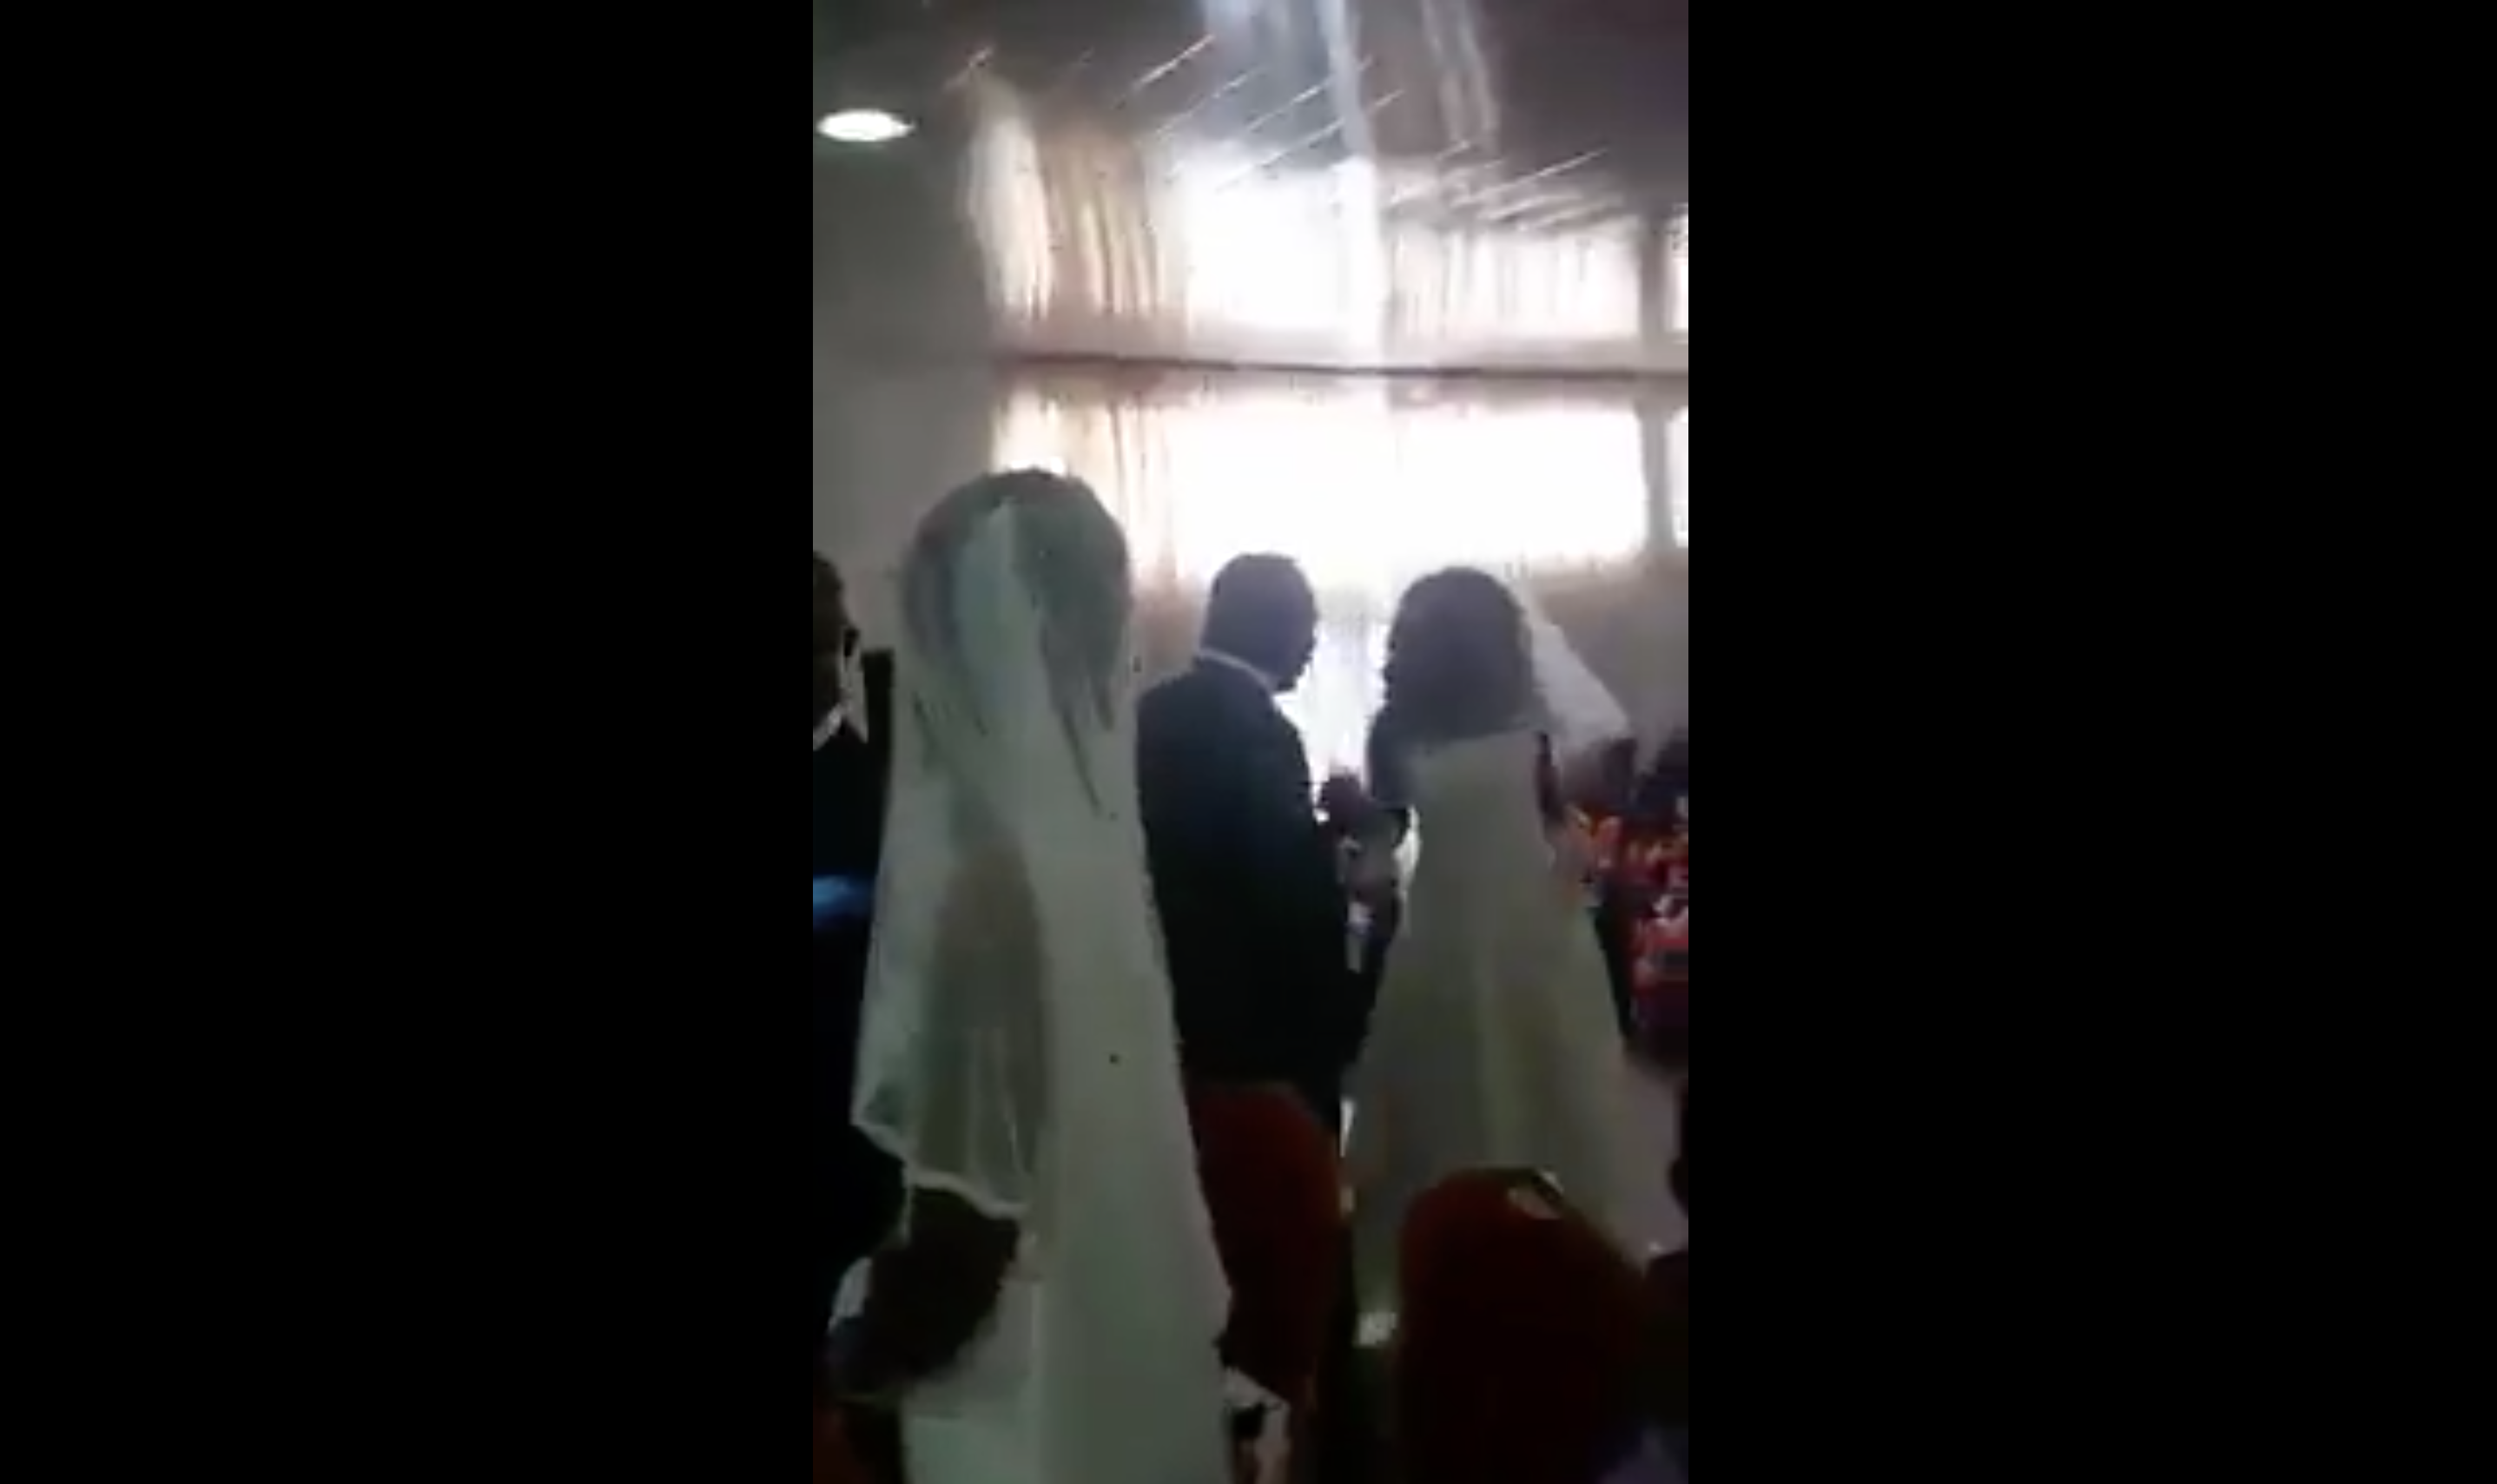 La mariée jette un coup d'œil furtif à l'intruse depuis le devant de l'autel. | Source : Facebook.com/Maguqa